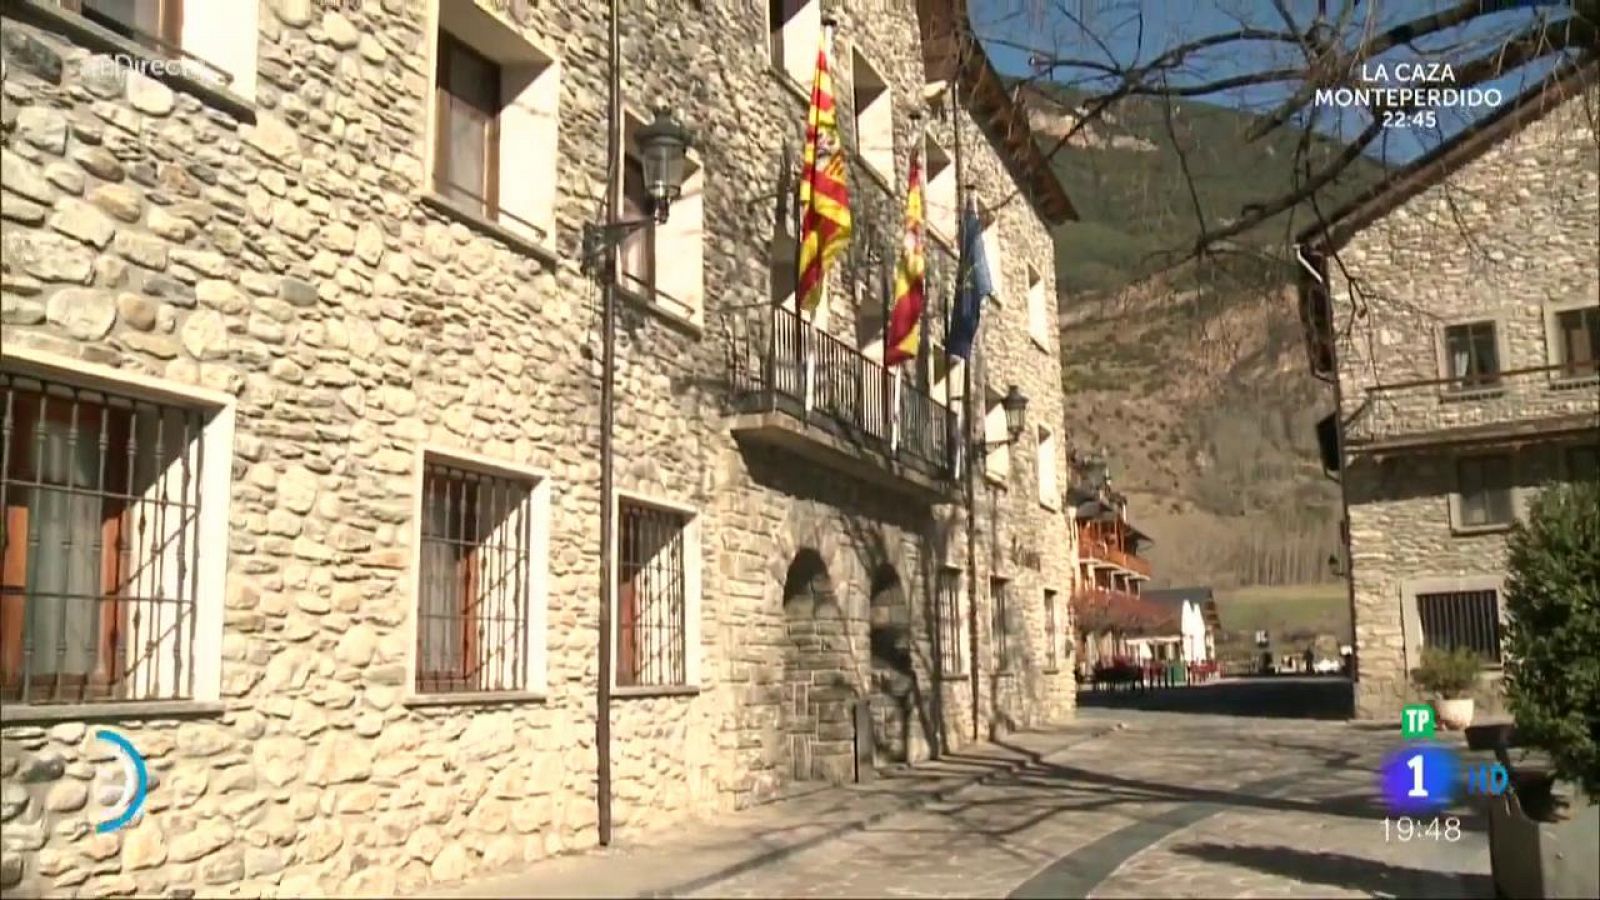 España Directo - 'España Directo' se acerca hasta Benasque, el pueblo donde se ha rodado 'La Caza. Monteperdido'